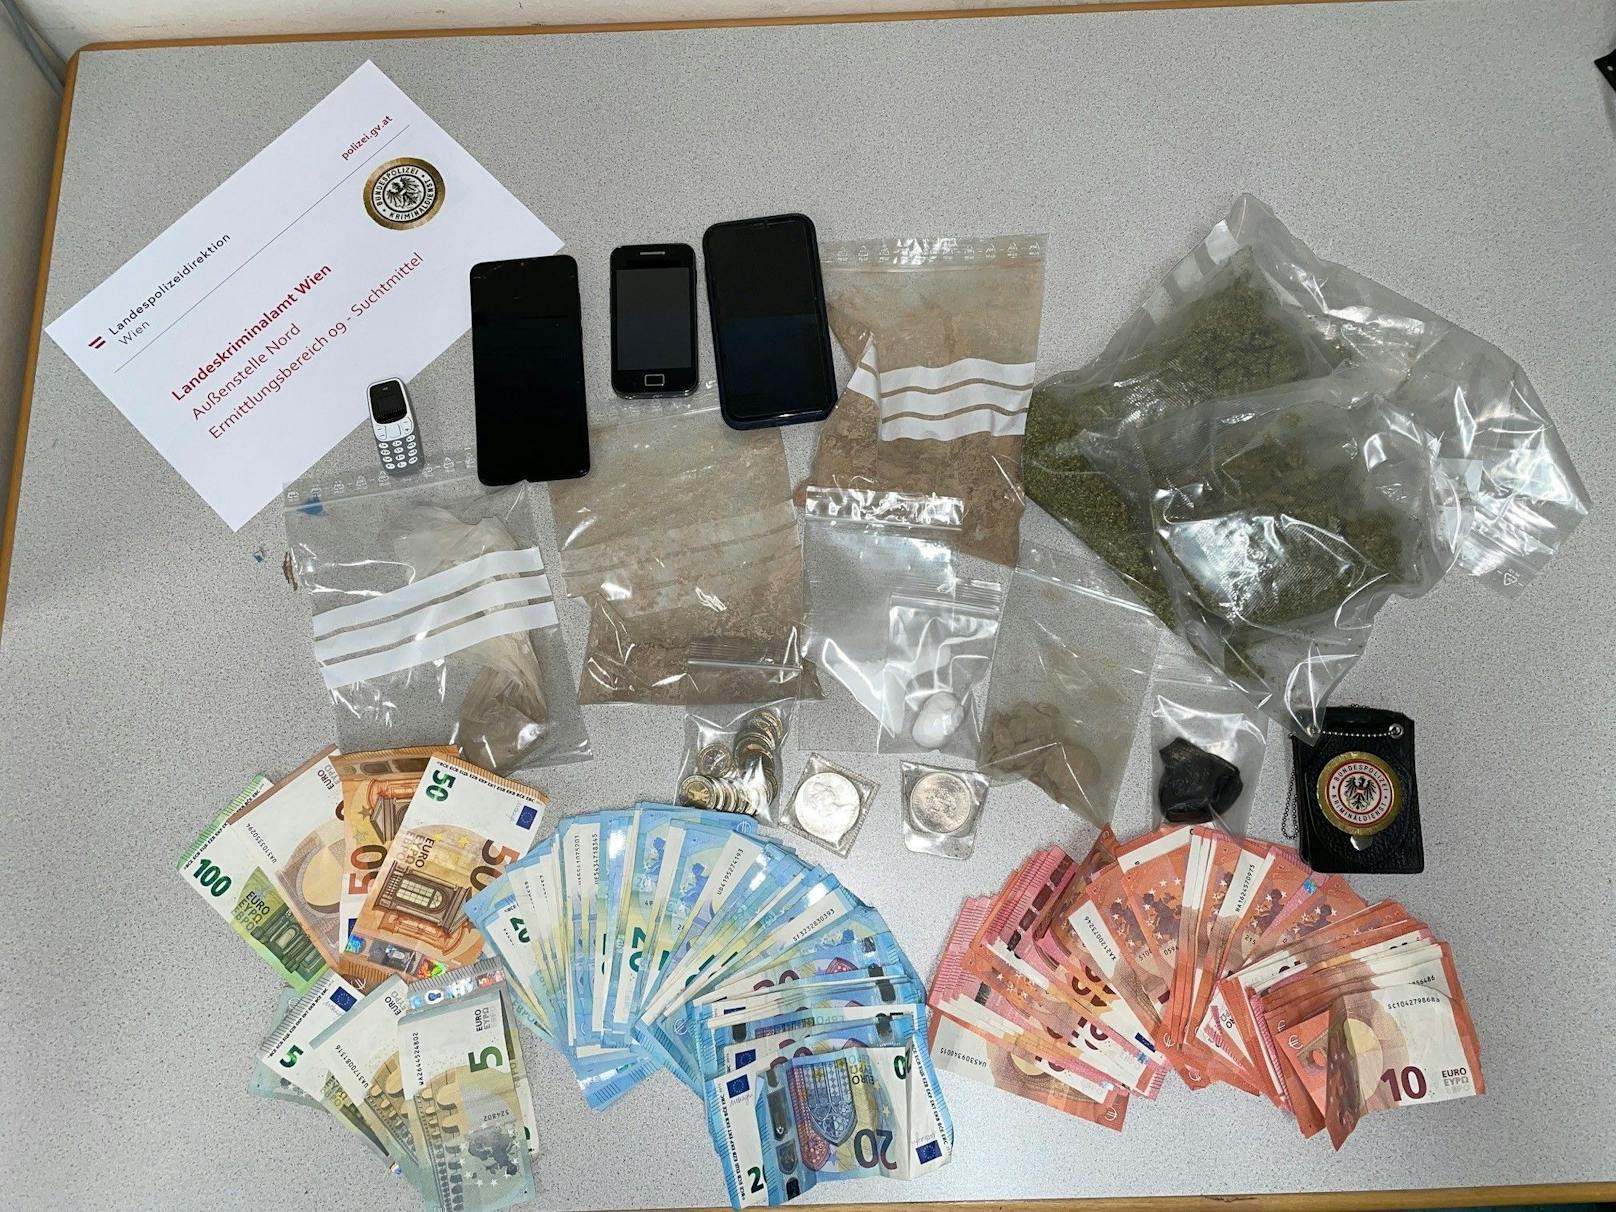 Die Polizei stellte Drogen (20.000 Euro) und Waffen sicher.